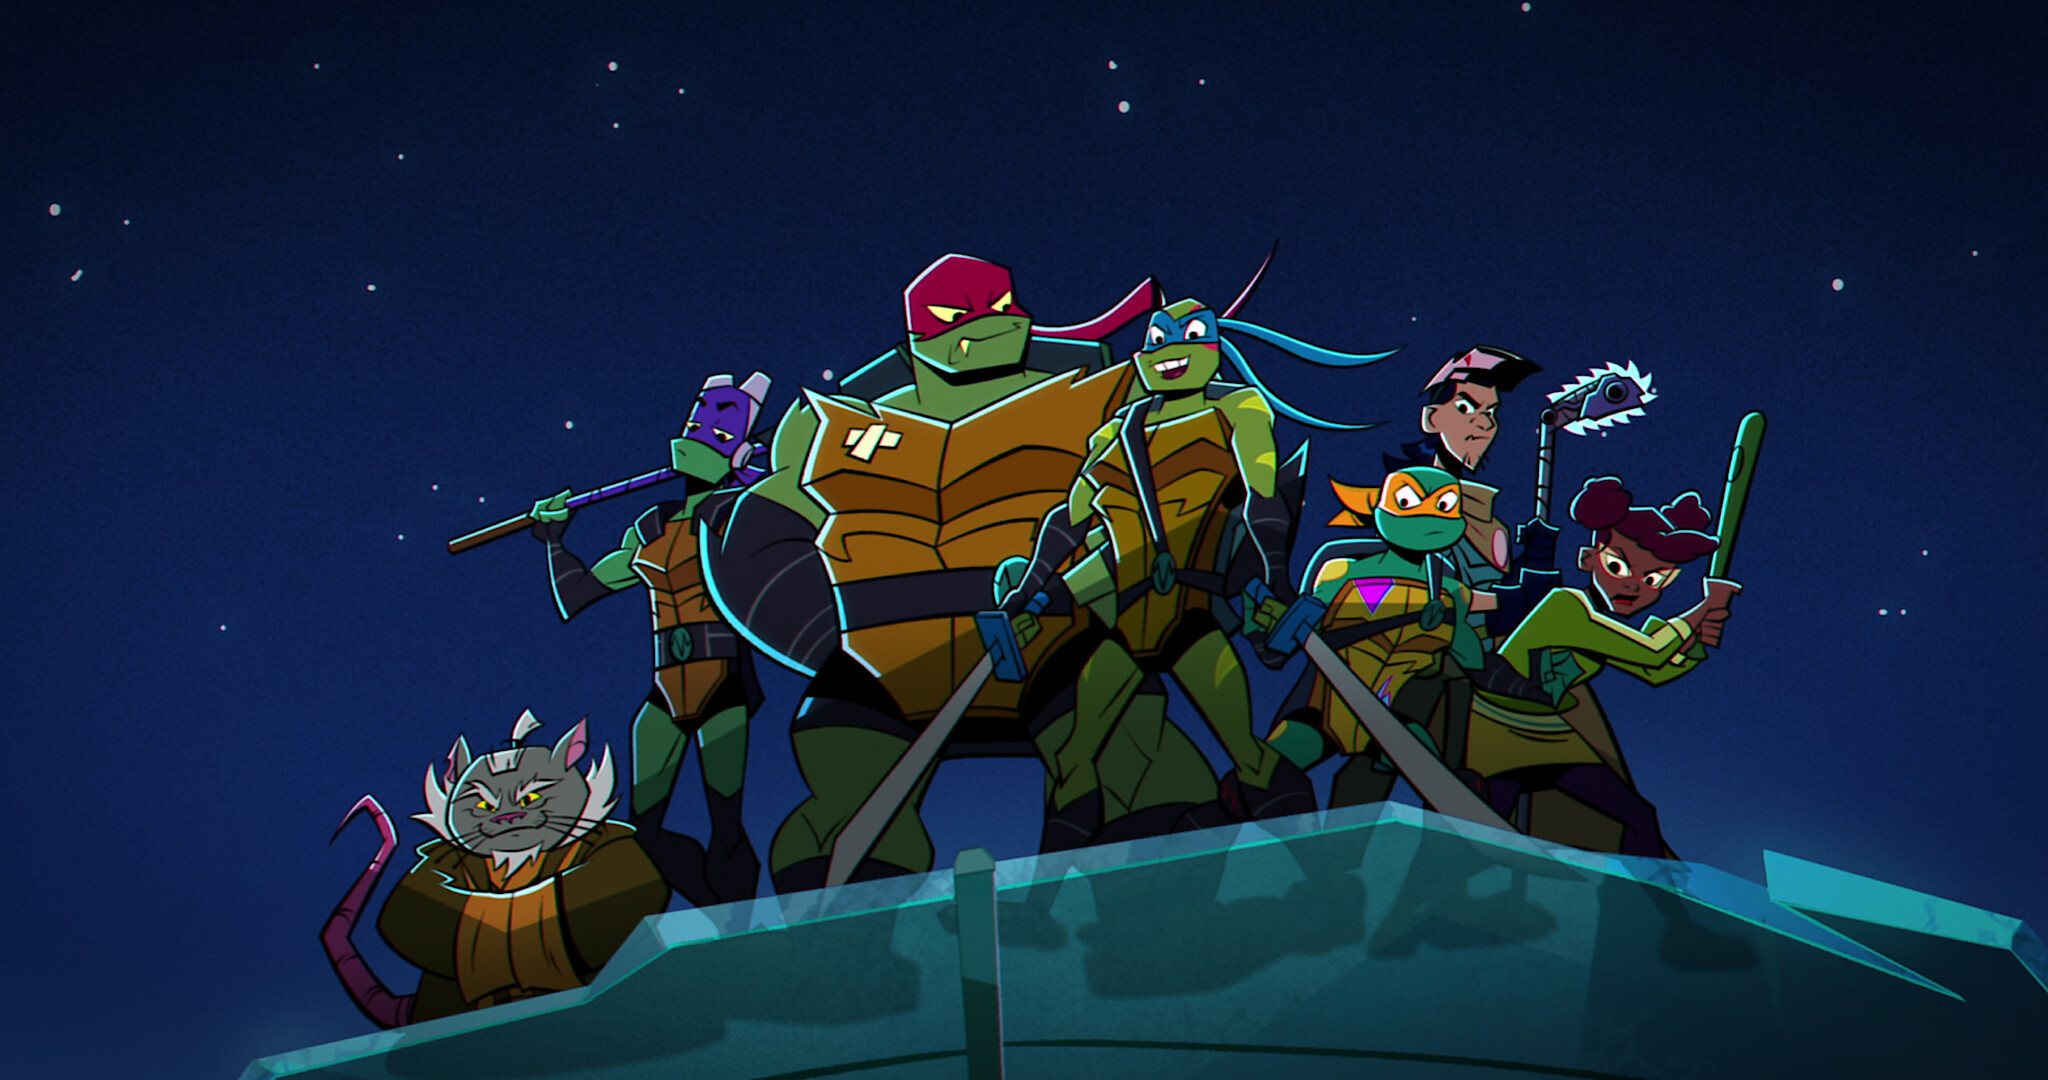 The 'Ninja Turtles' Return With New Animated Netflix Movie